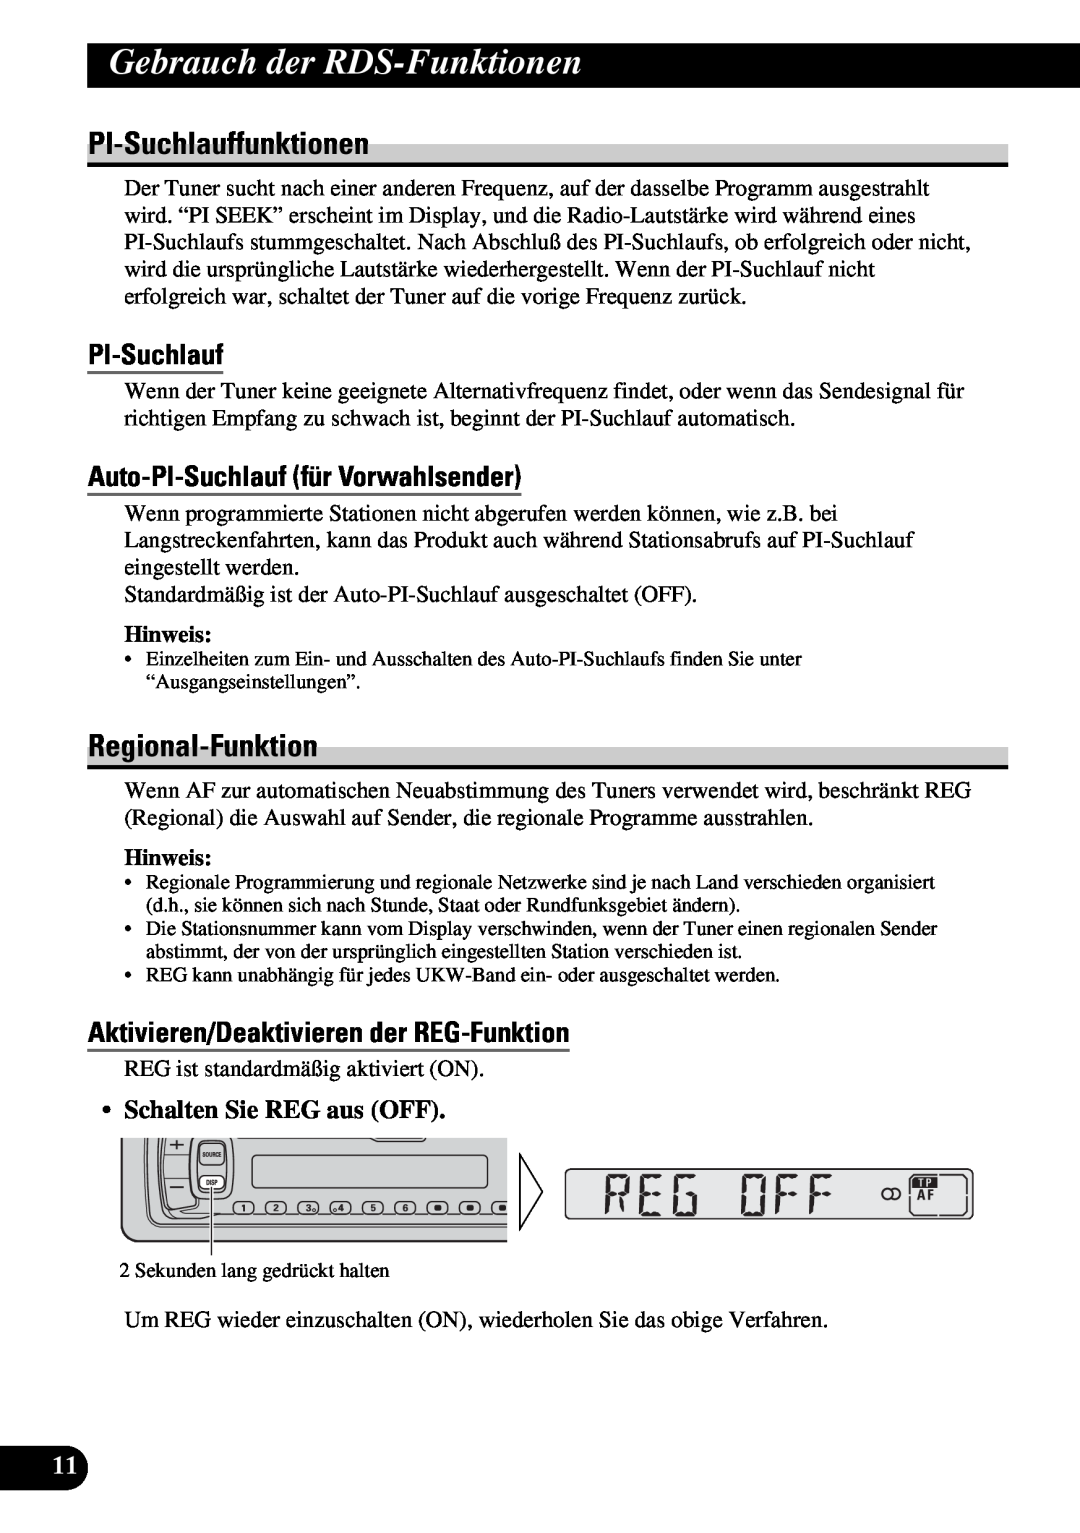 Pioneer KEH-3930R PI-Suchlauffunktionen, Regional-Funktion, Auto-PI-Suchlauffür Vorwahlsender, Gebrauch der RDS-Funktionen 